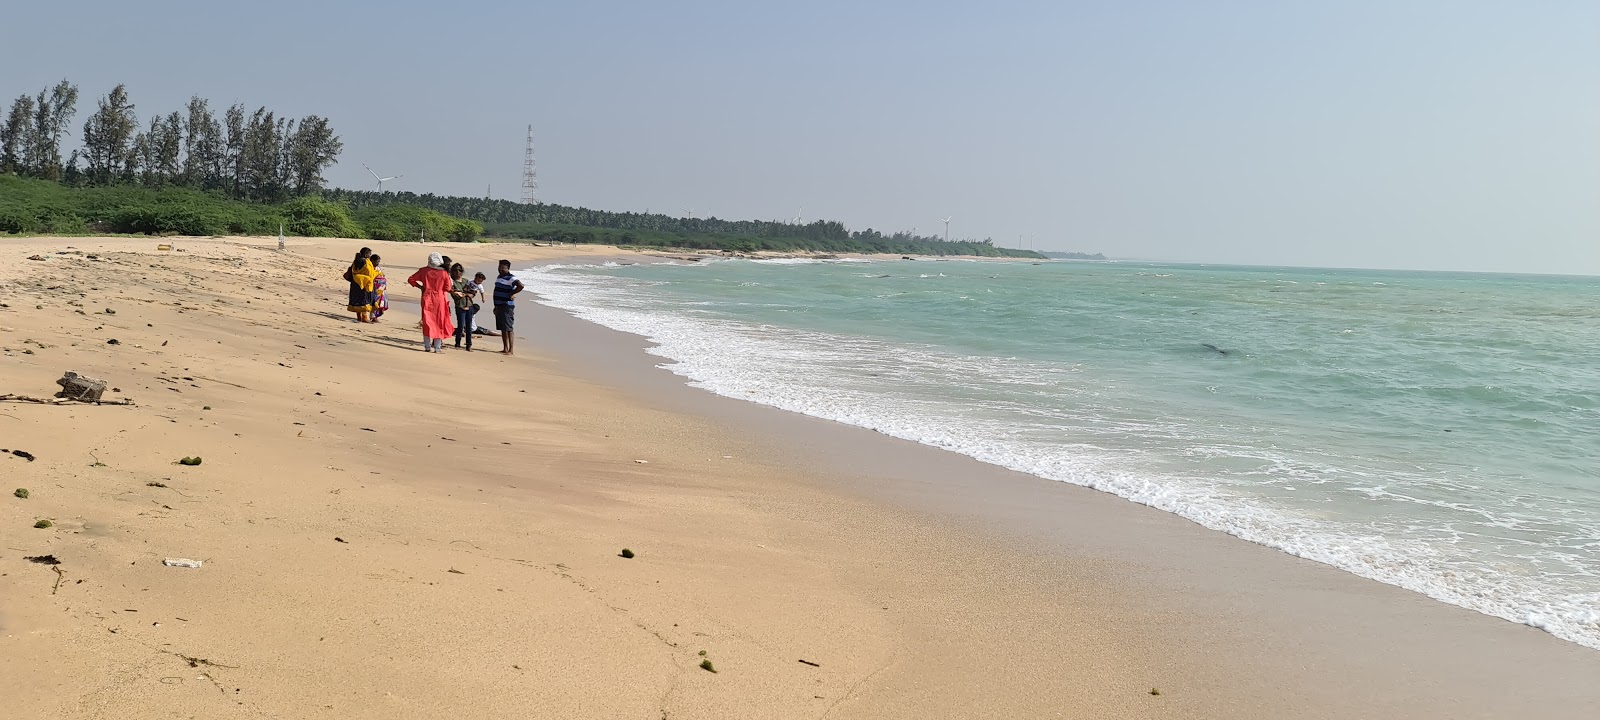 Rasthakaadu Beach'in fotoğrafı geniş plaj ile birlikte